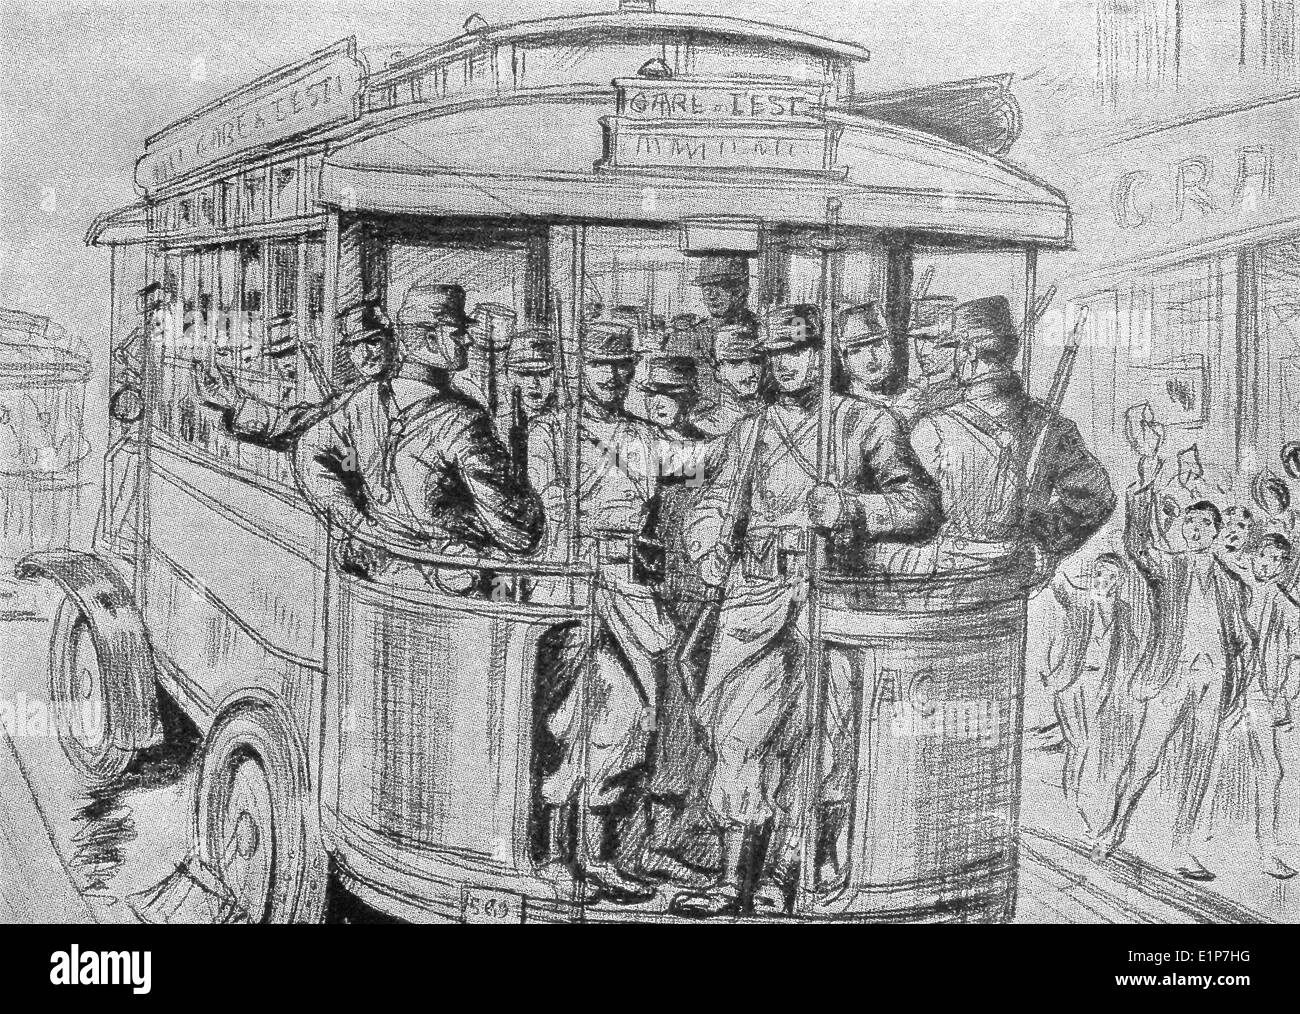 Cet hôtel contemporain de l'illustration montre les soldats l'autobus en France Aller à la guerre pendant la Première Guerre mondiale. Banque D'Images